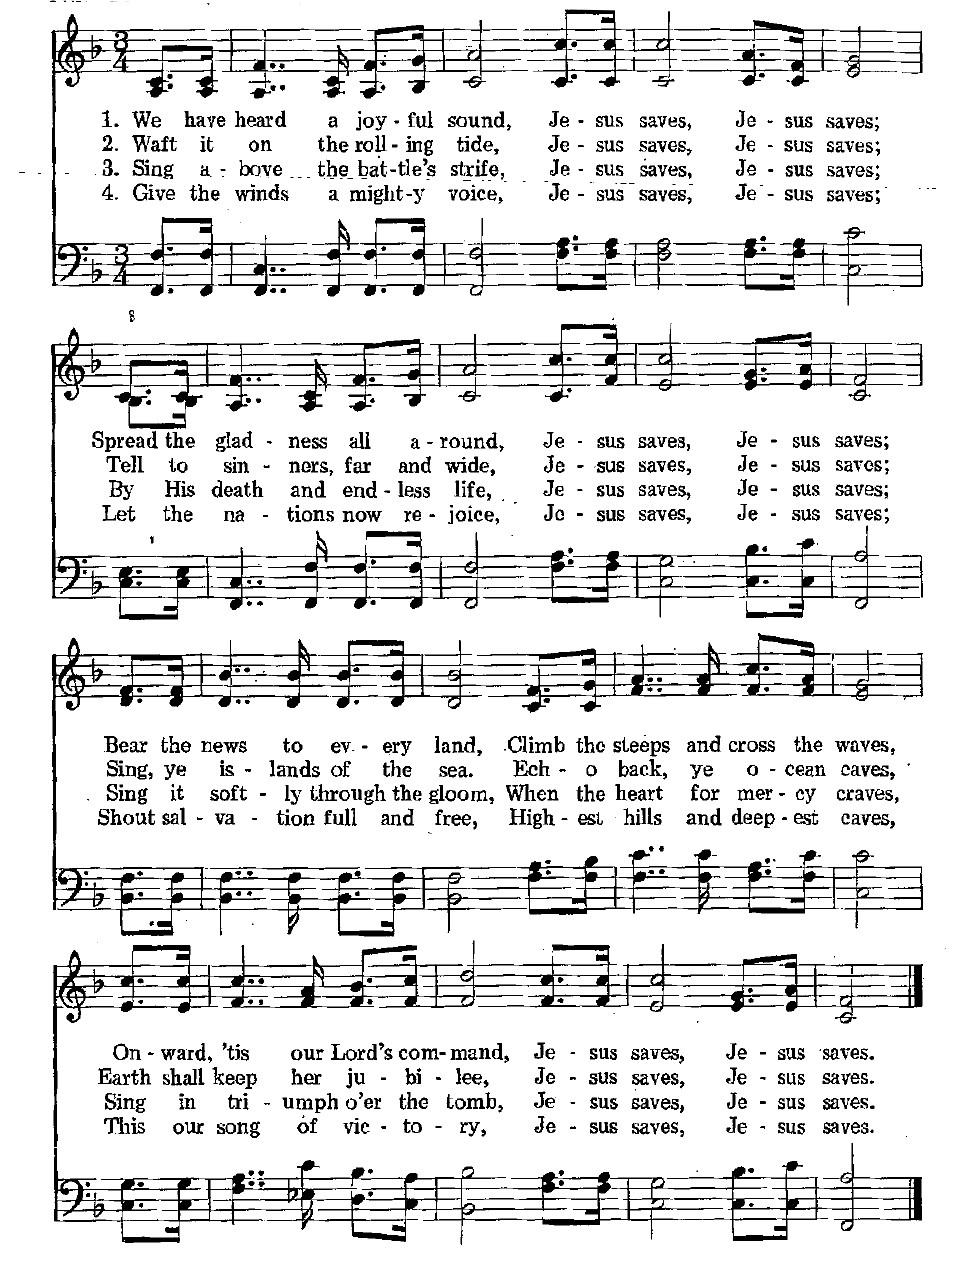 340 – Jesus Saves sheet music